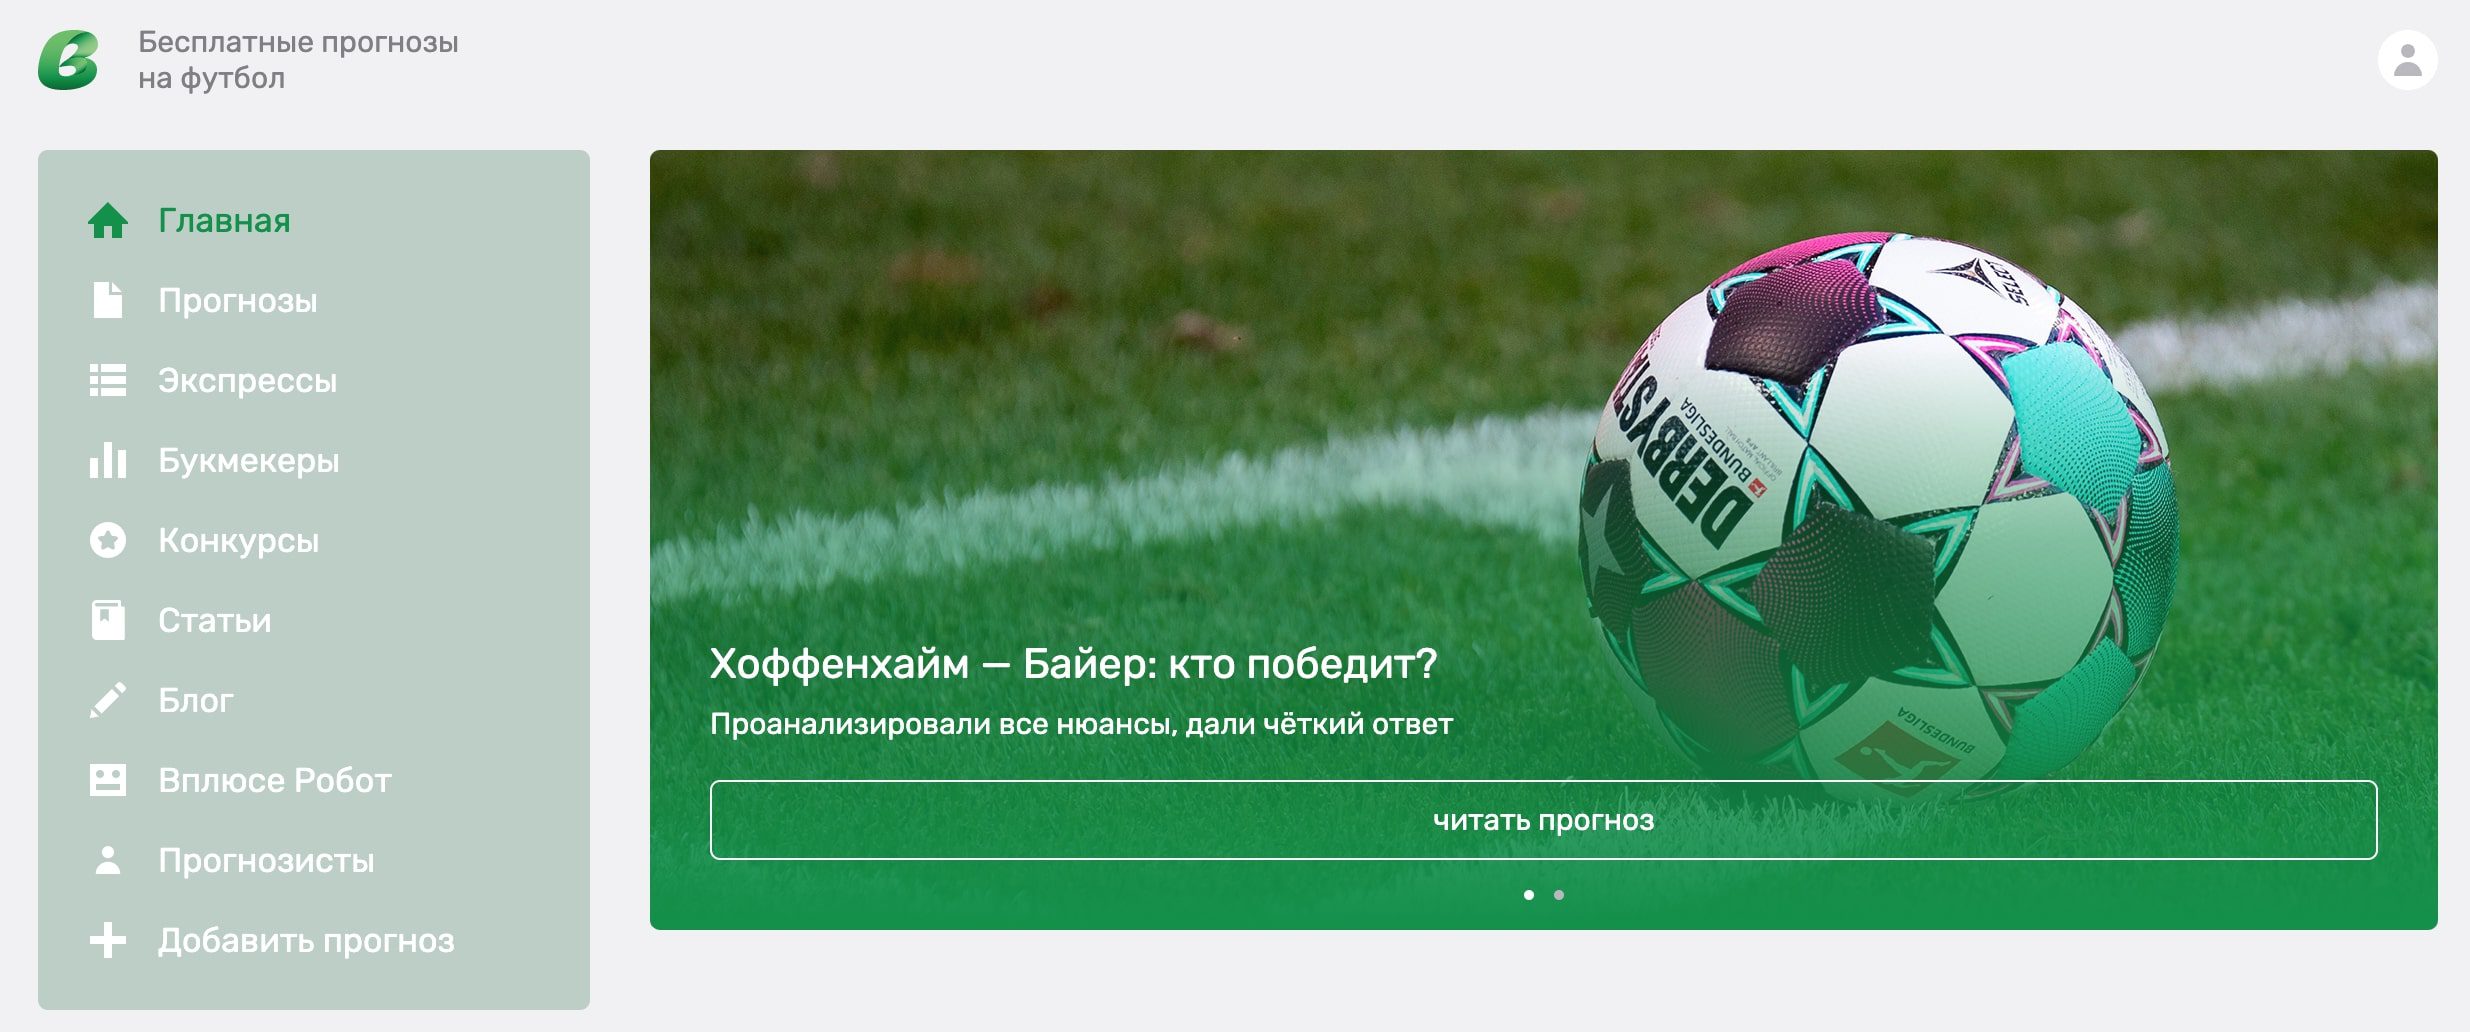 Главная страница сайта www Vpliuse.ru (Вплюсе)